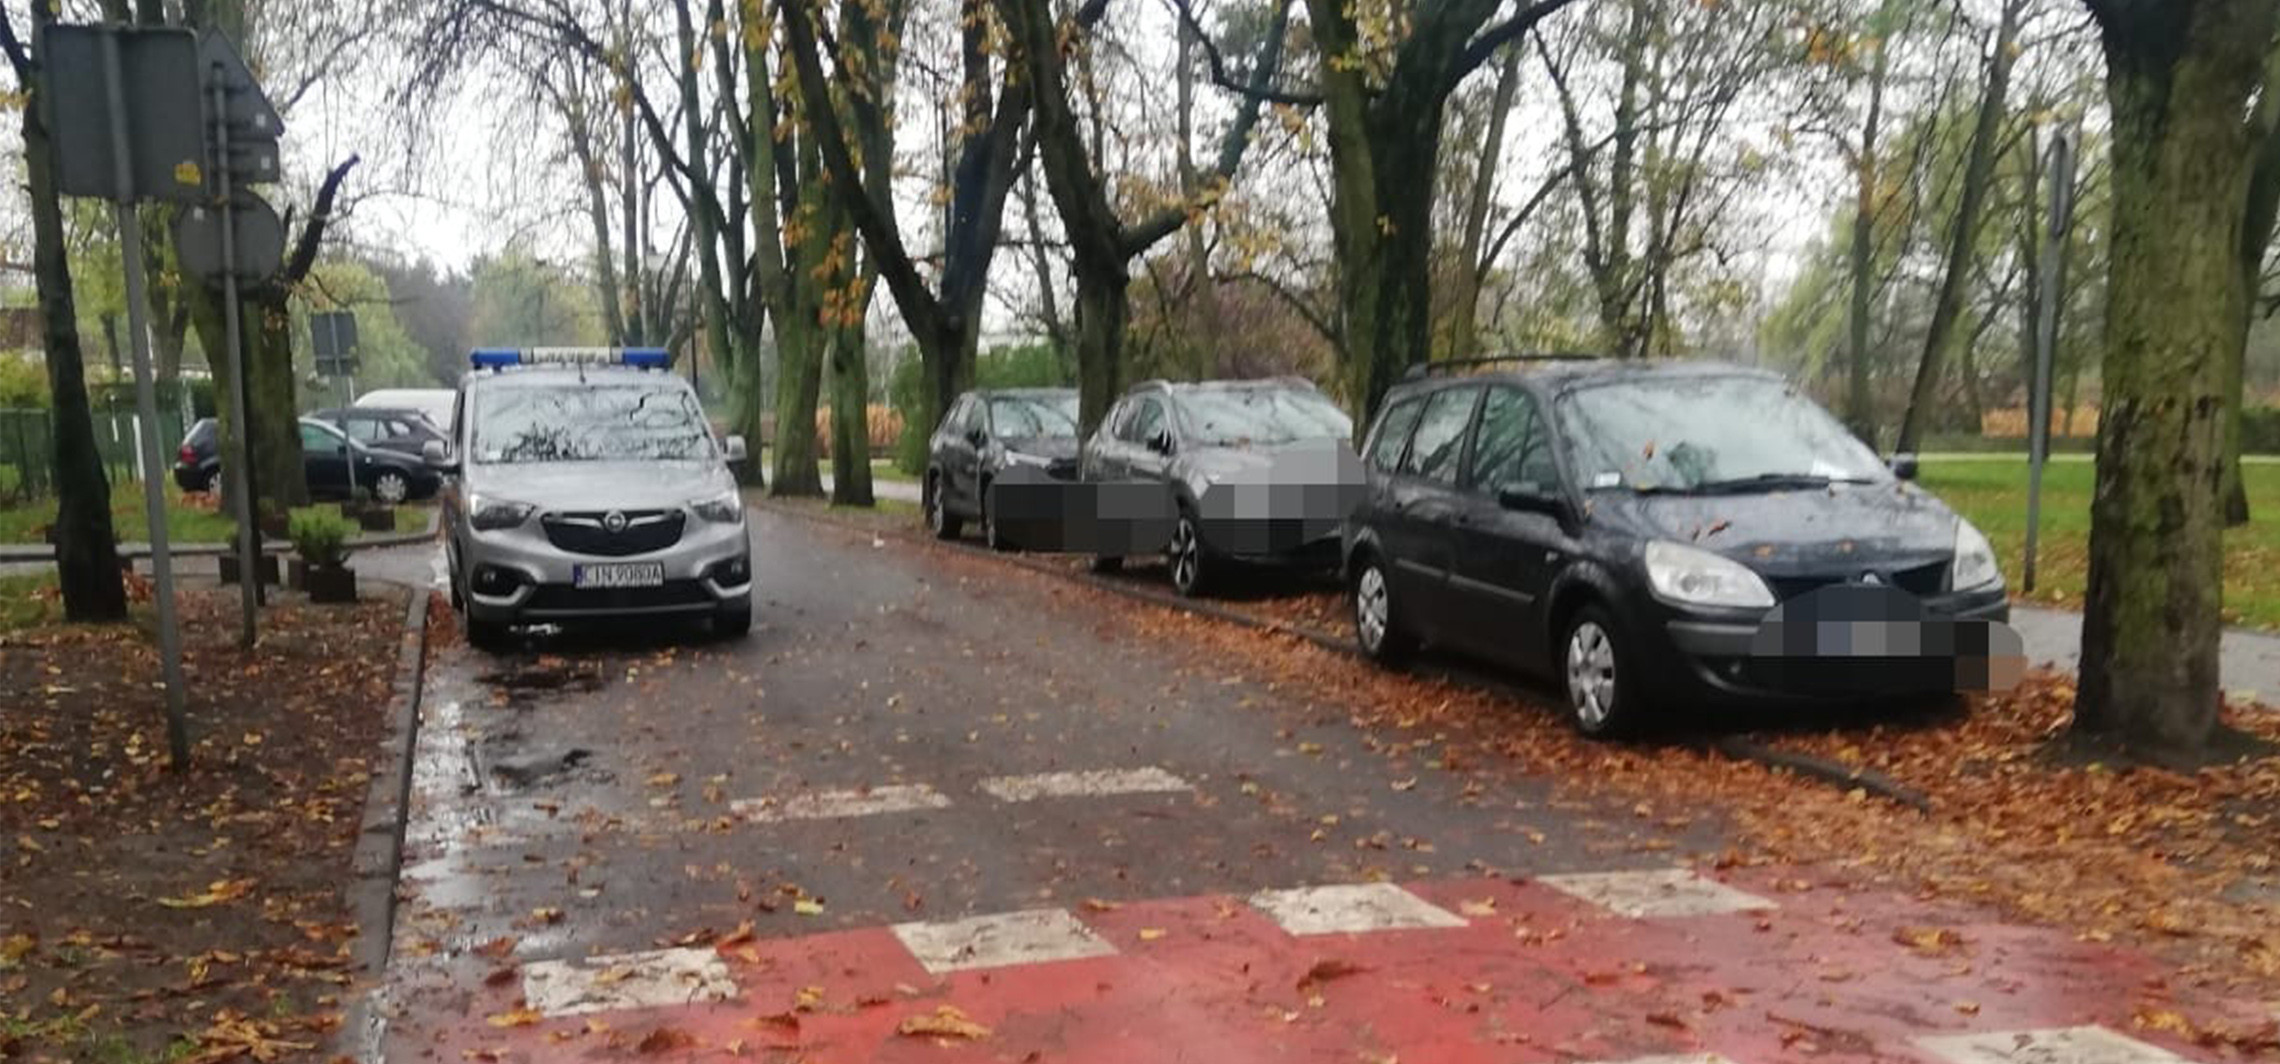 Inowrocław - Takie parkowanie kończy się mandatem. Zdjęcia